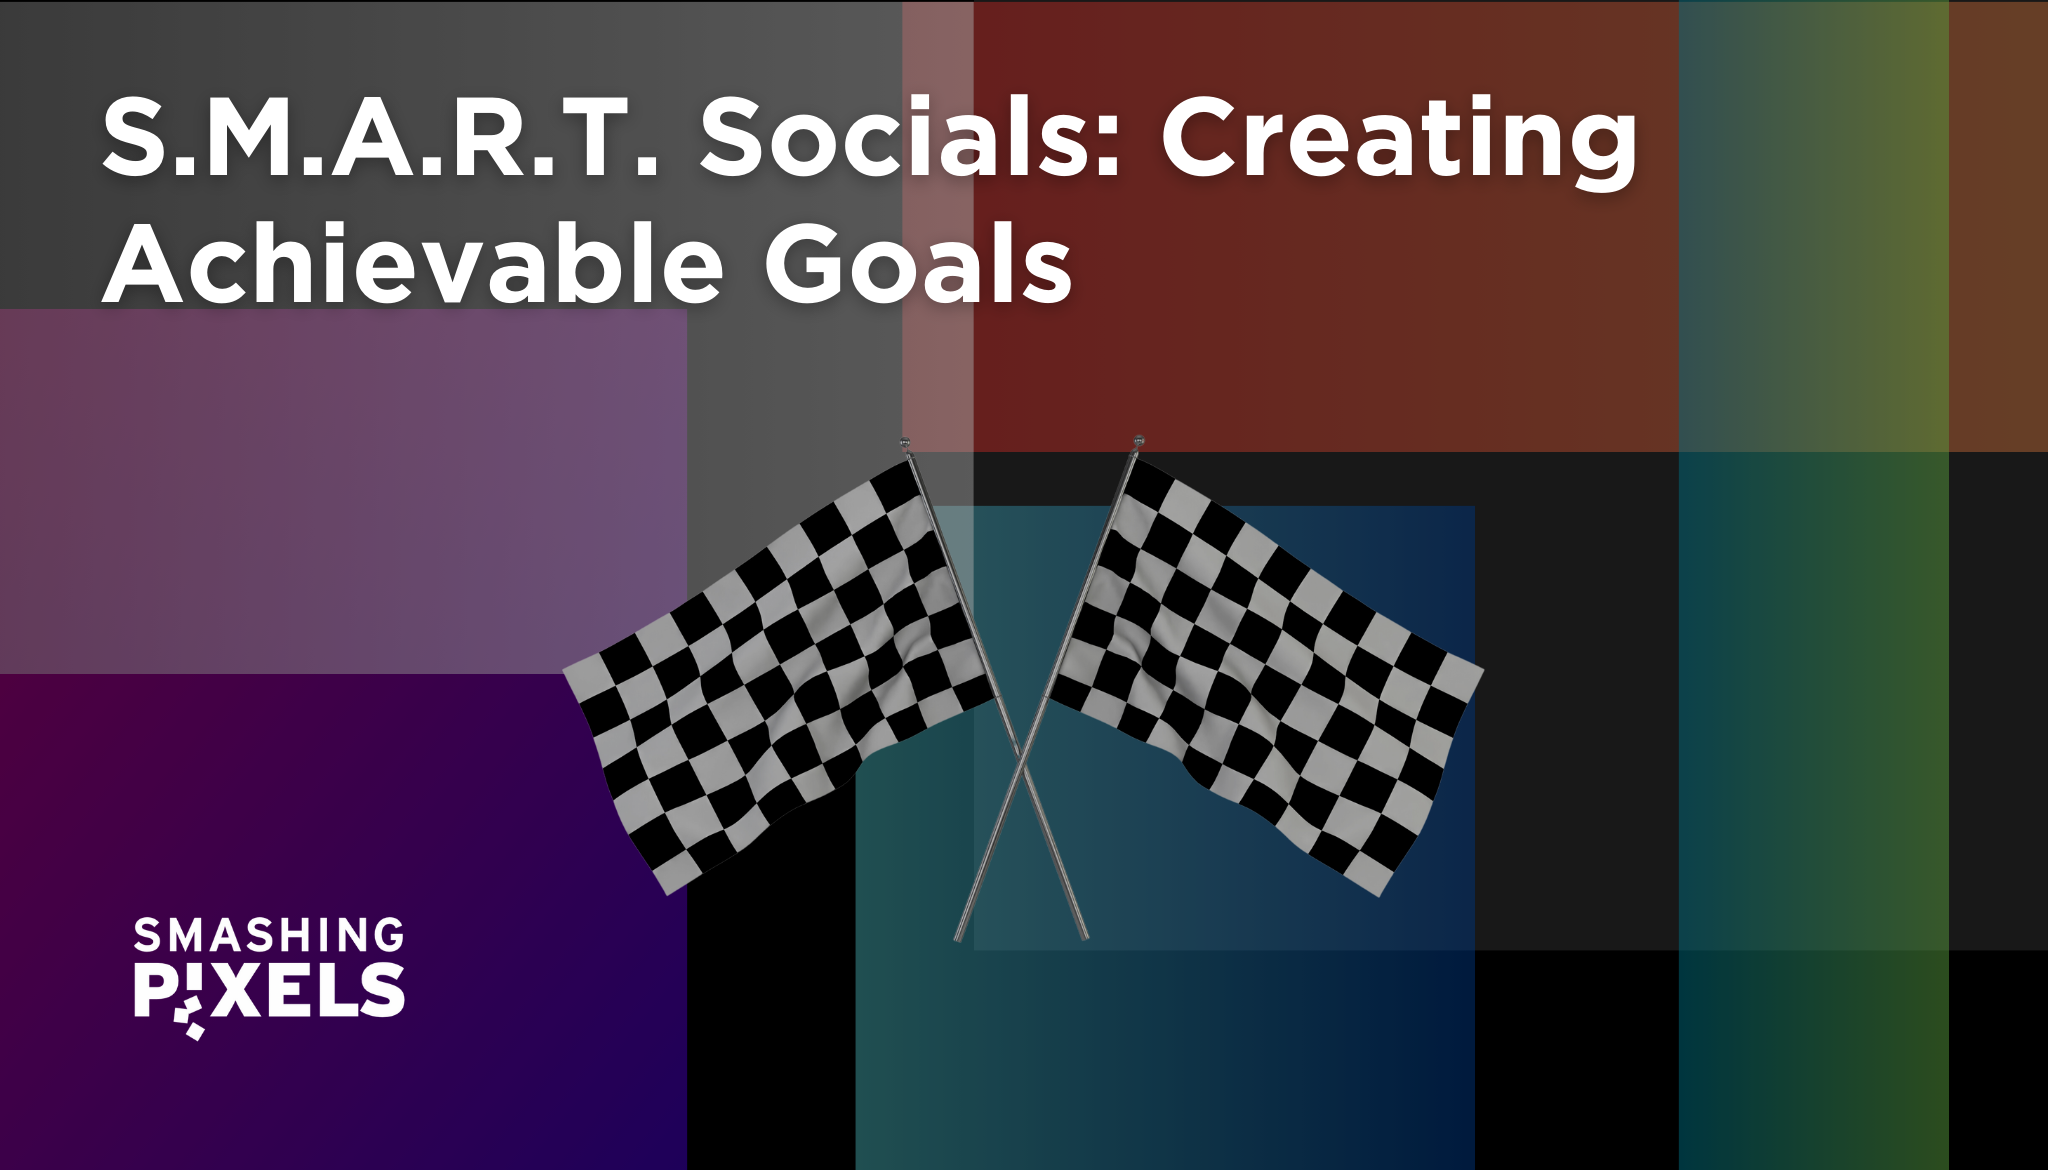 S.M.A.R.T. Socials: Creating Achievable Goals